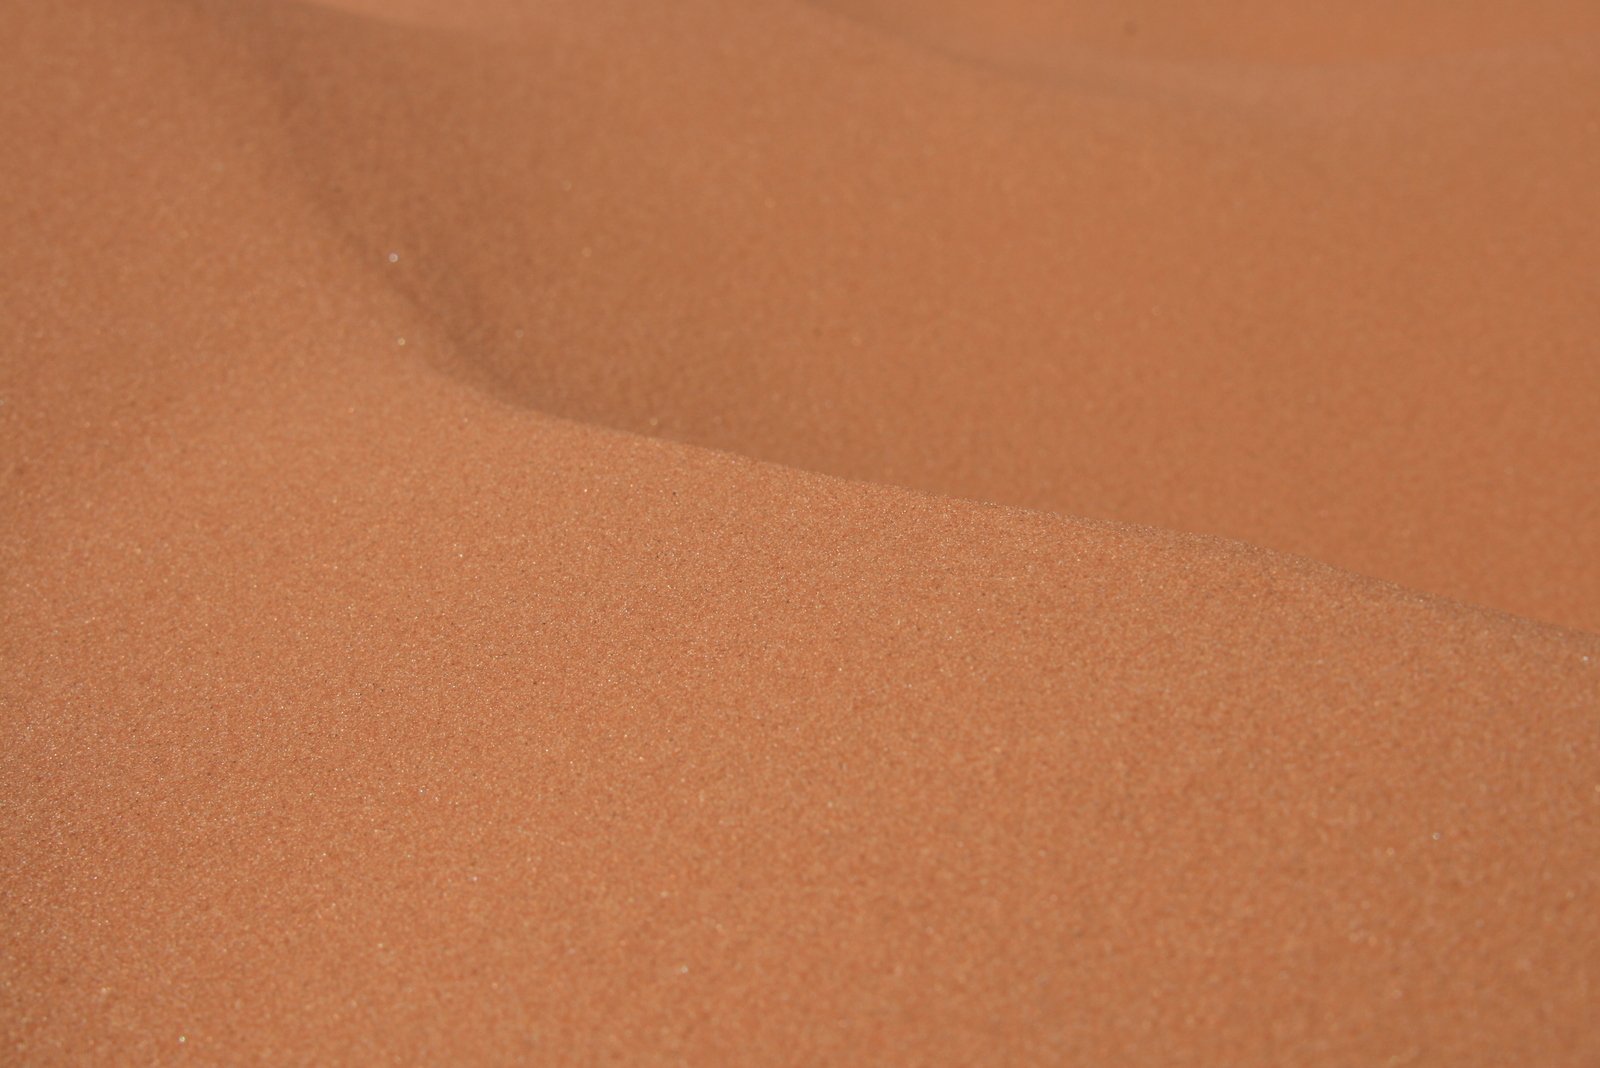 a bird on the top of a desert sand dune